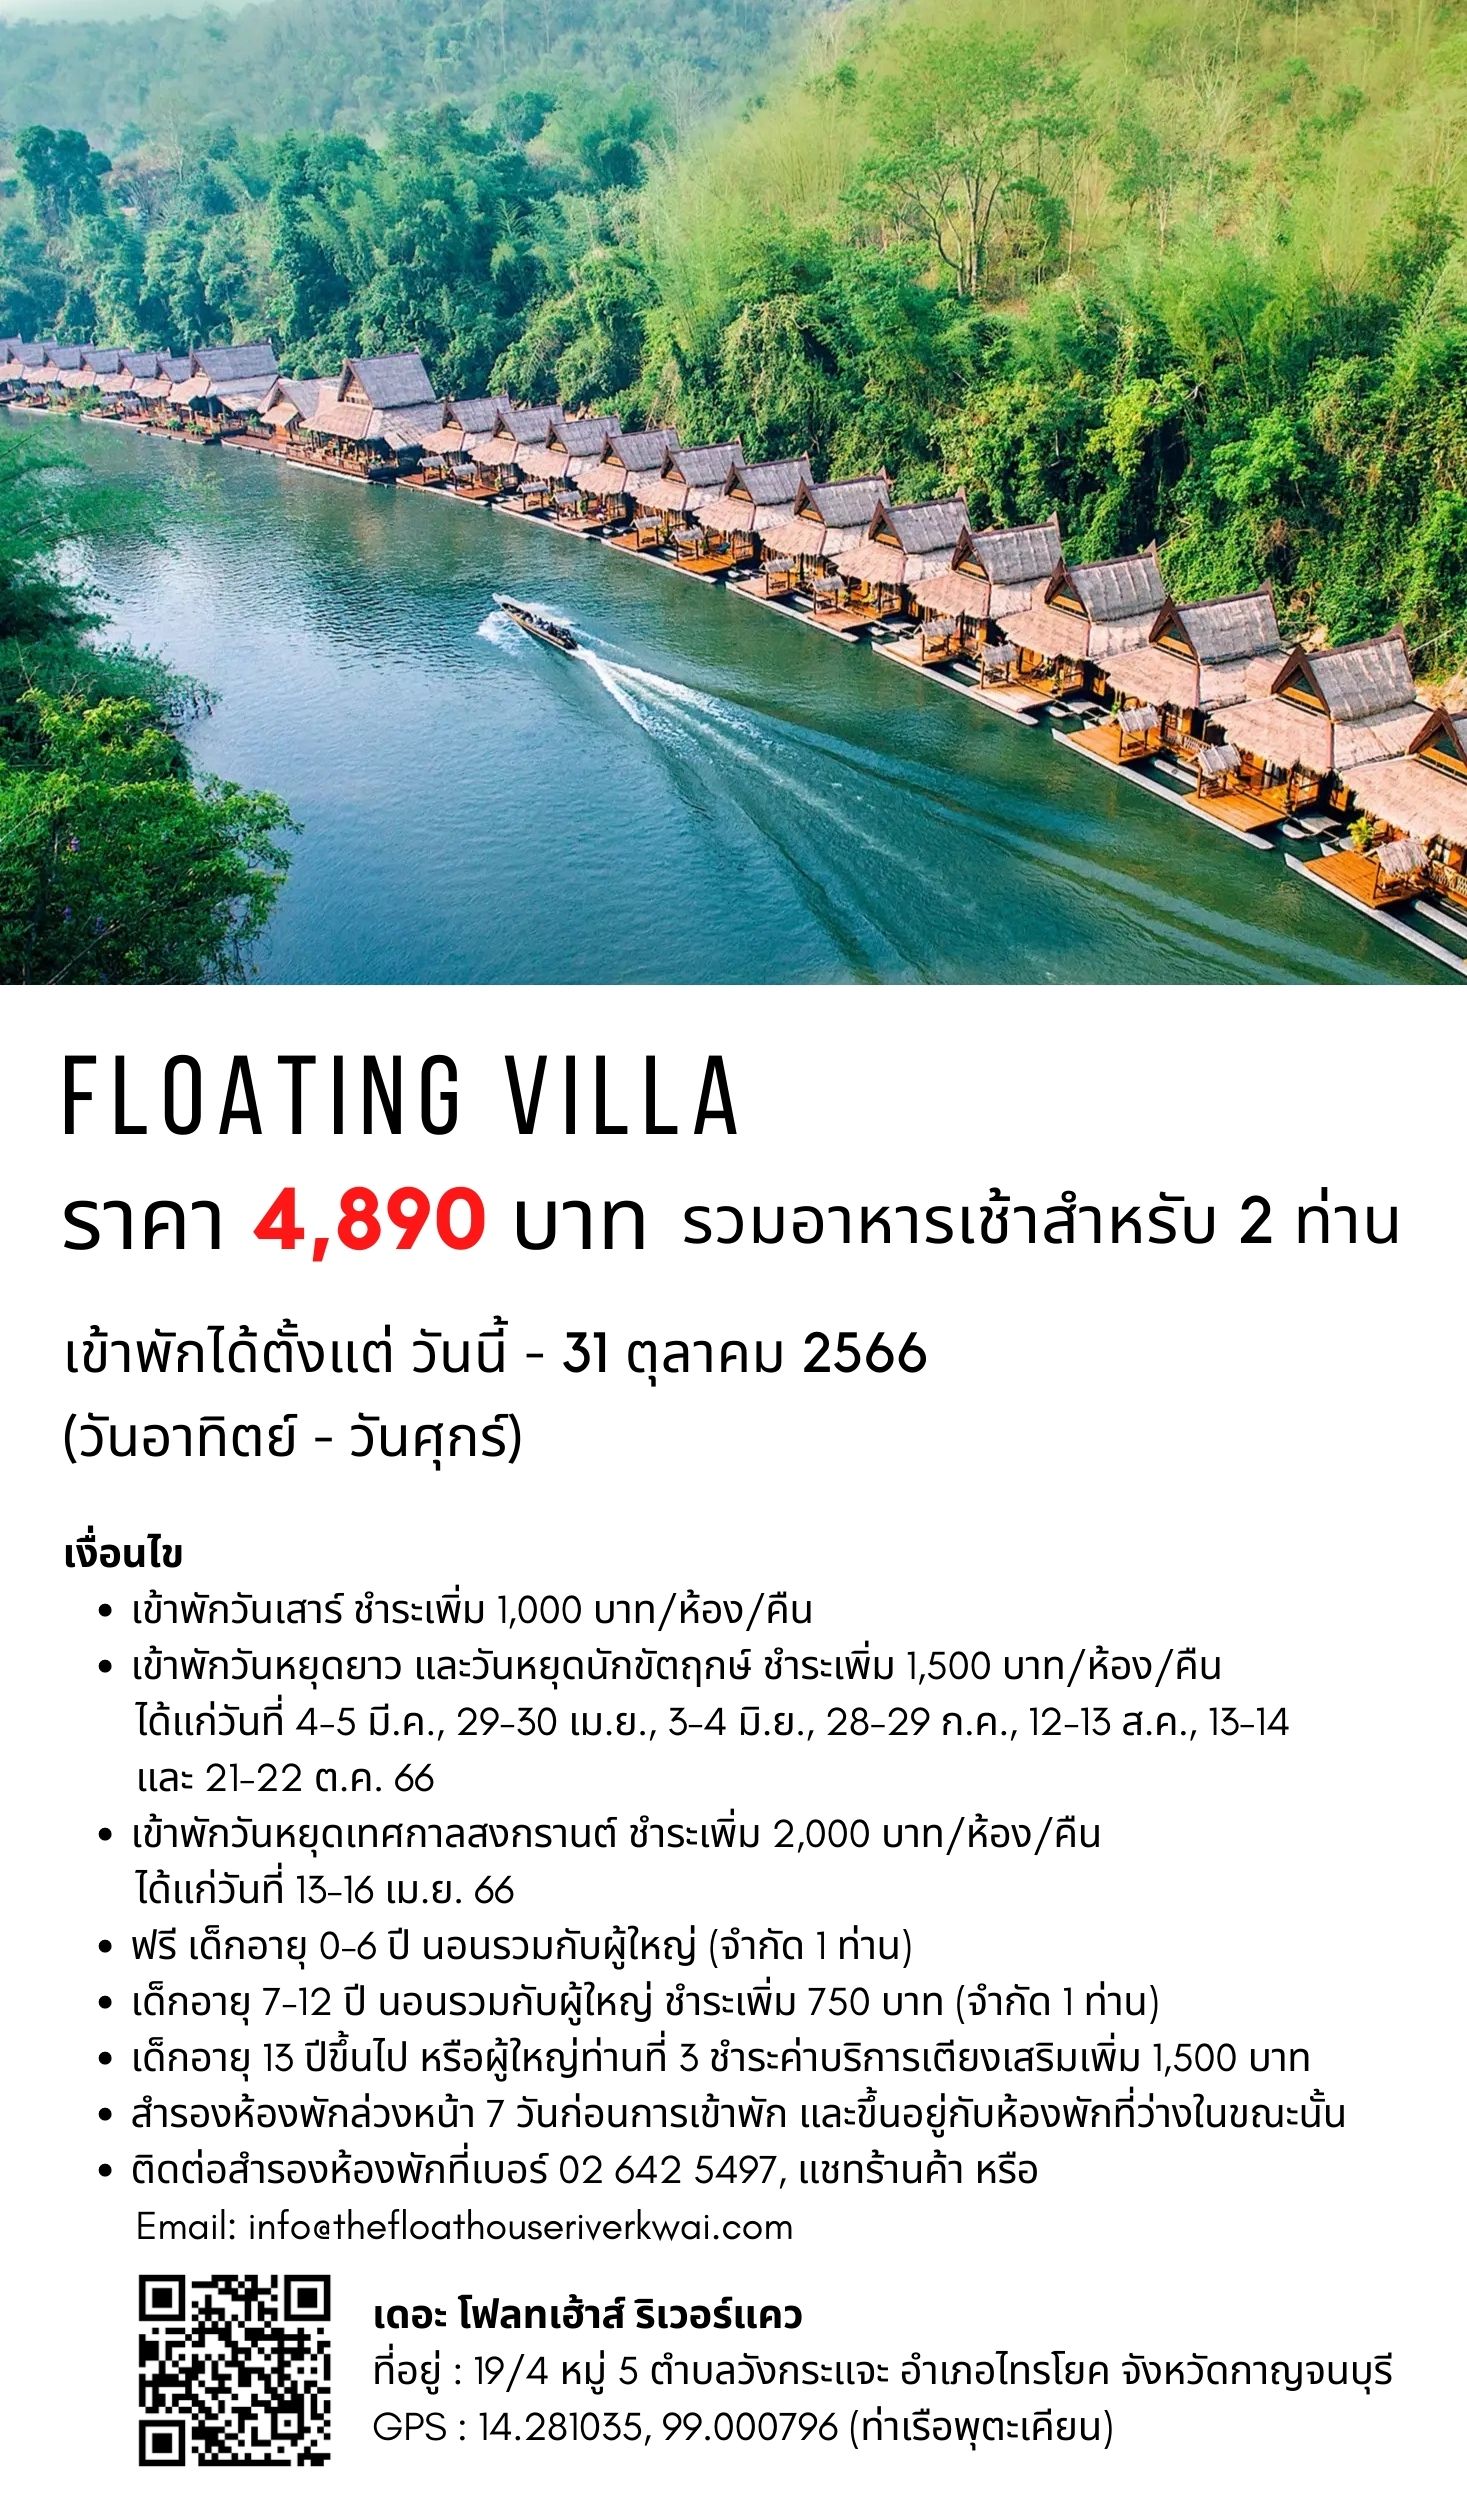 ข้อมูลเกี่ยวกับ [E-vo] The Float House River Kwai, กาญจนบุรี - เข้าพักได้ถึง 31 ต.ค. 66 ห้อง Floating Villa 1 คืน พร้อมอาหารเช้า 2 ท่าน